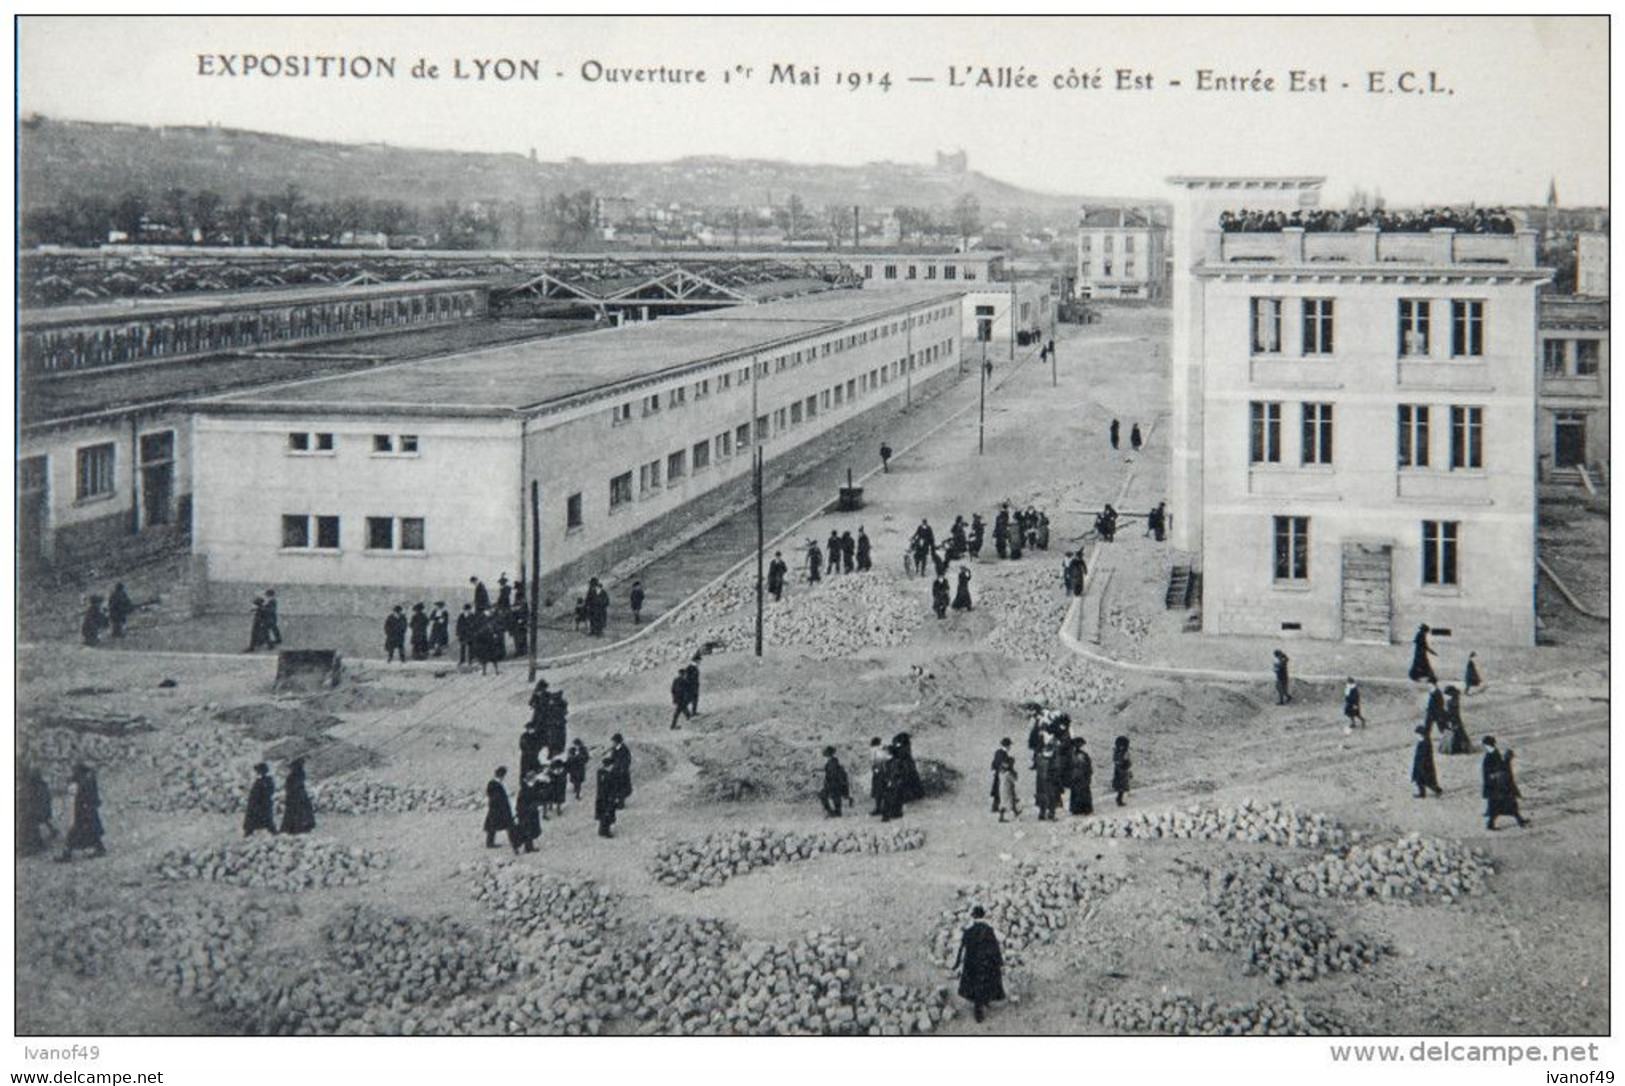 Très beau LOT de 16 CPA - EXPOSITION INTERNATIONALE DE 1914 - Ouverture, construction,pavillons, pouss pouss,pompiers